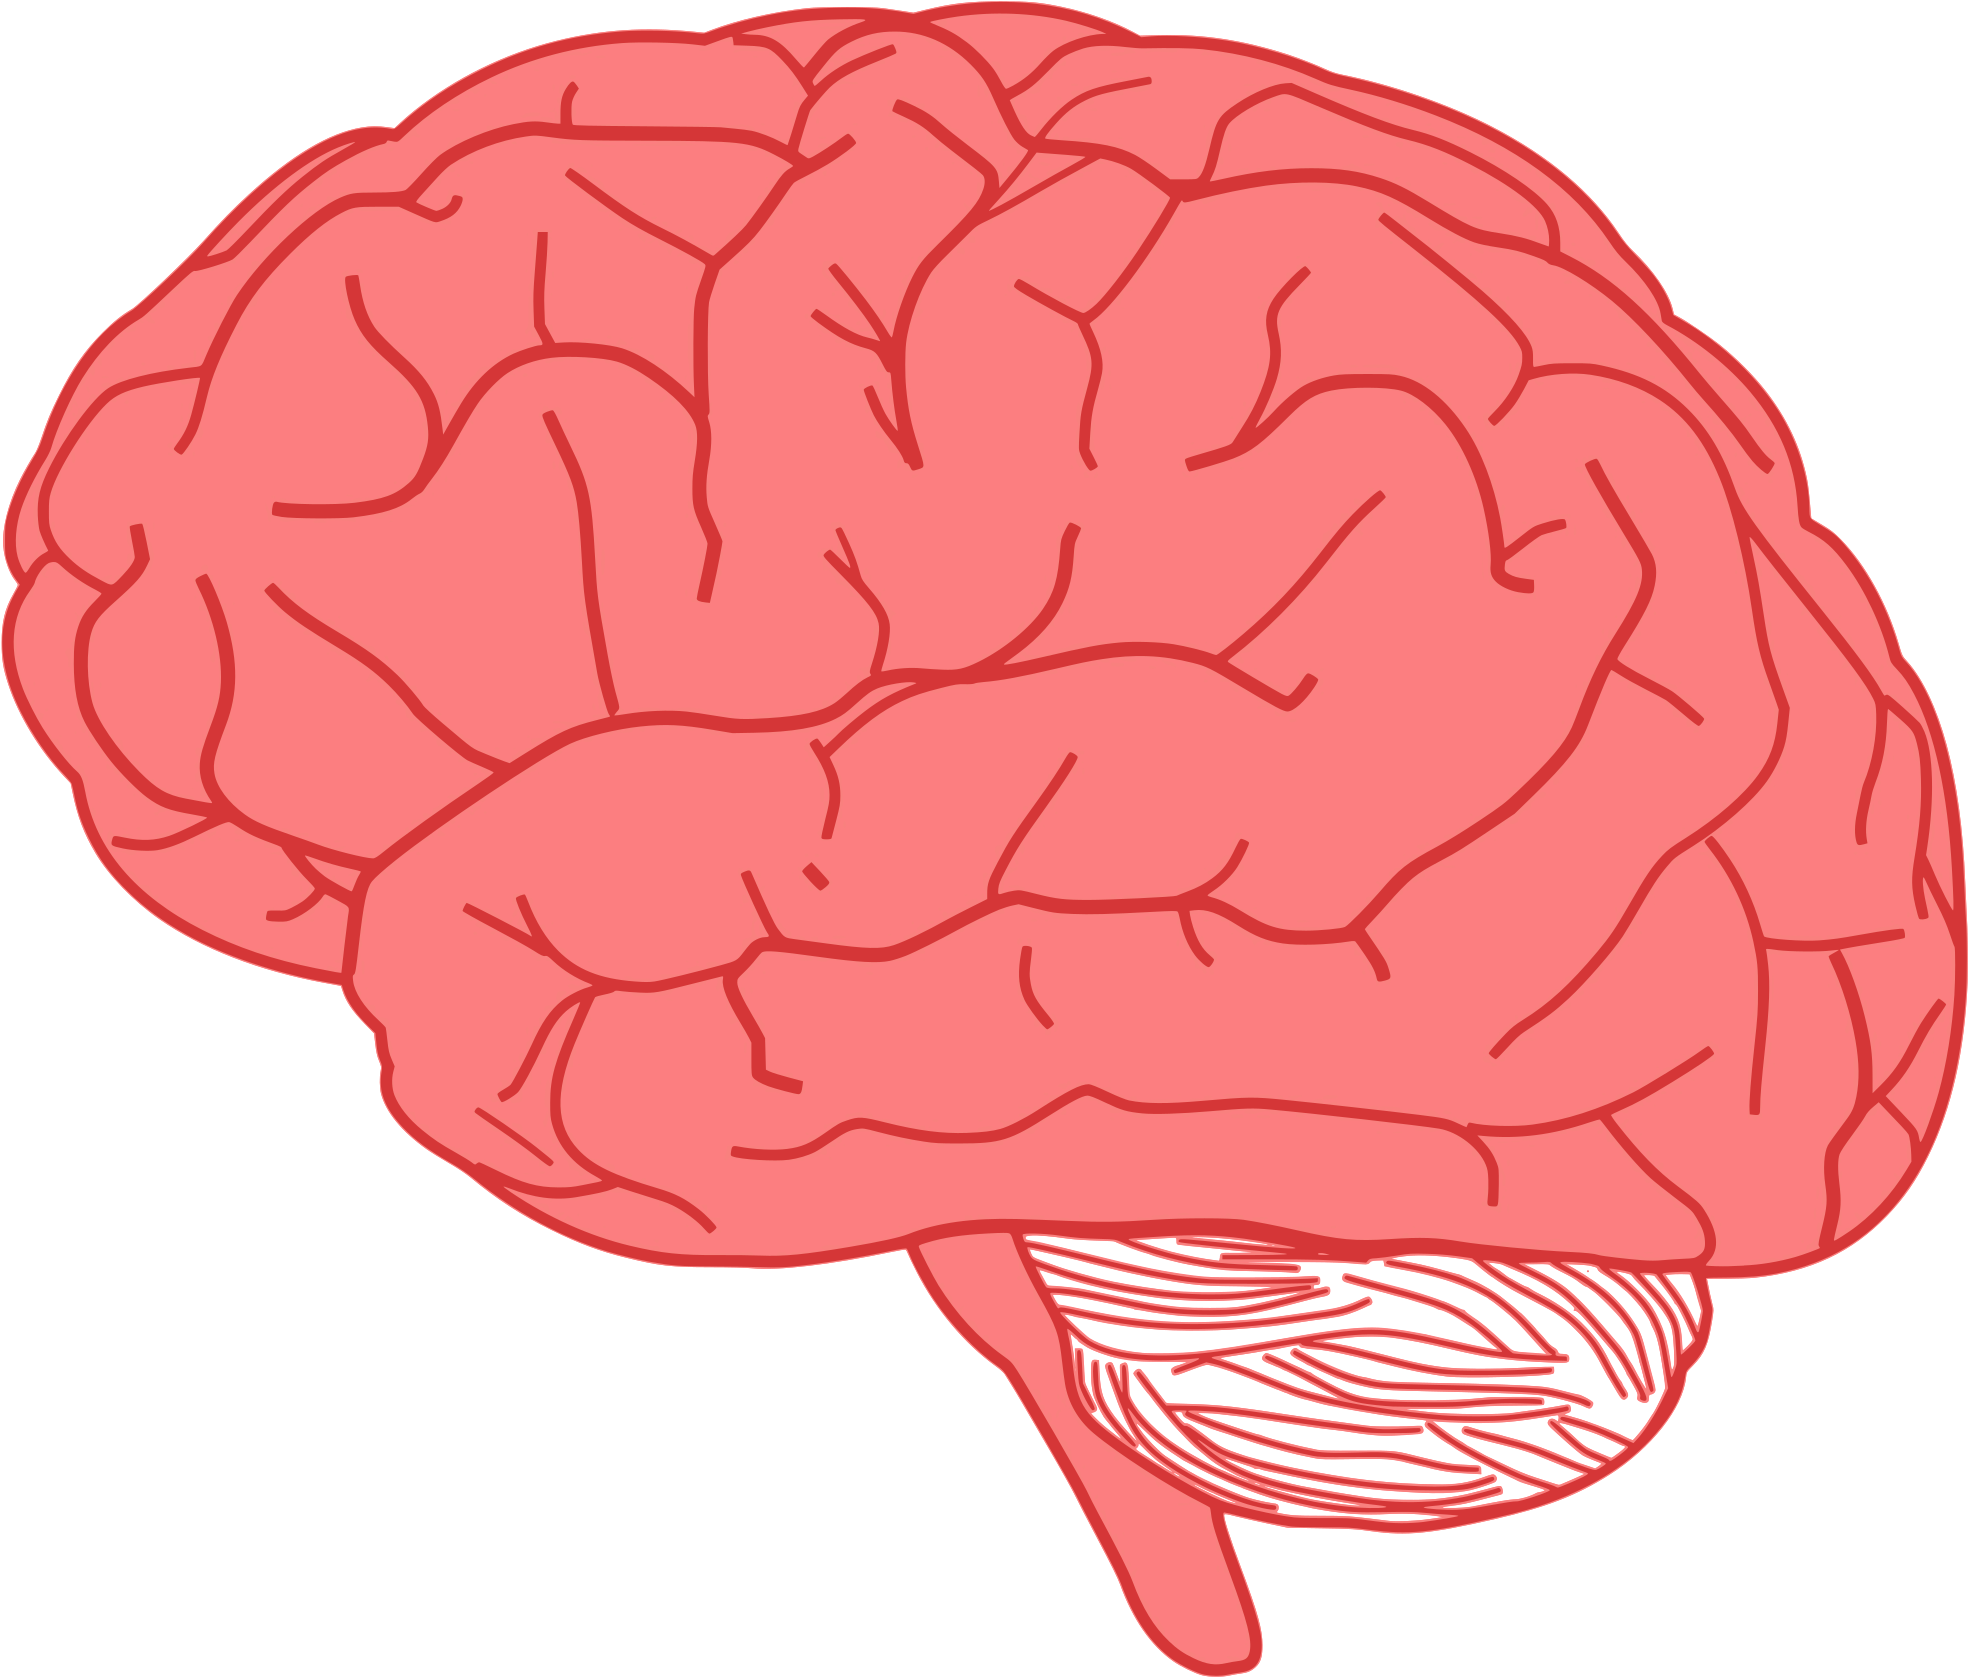 Brains behind. Изображение мозга человека. Векторный мозг.